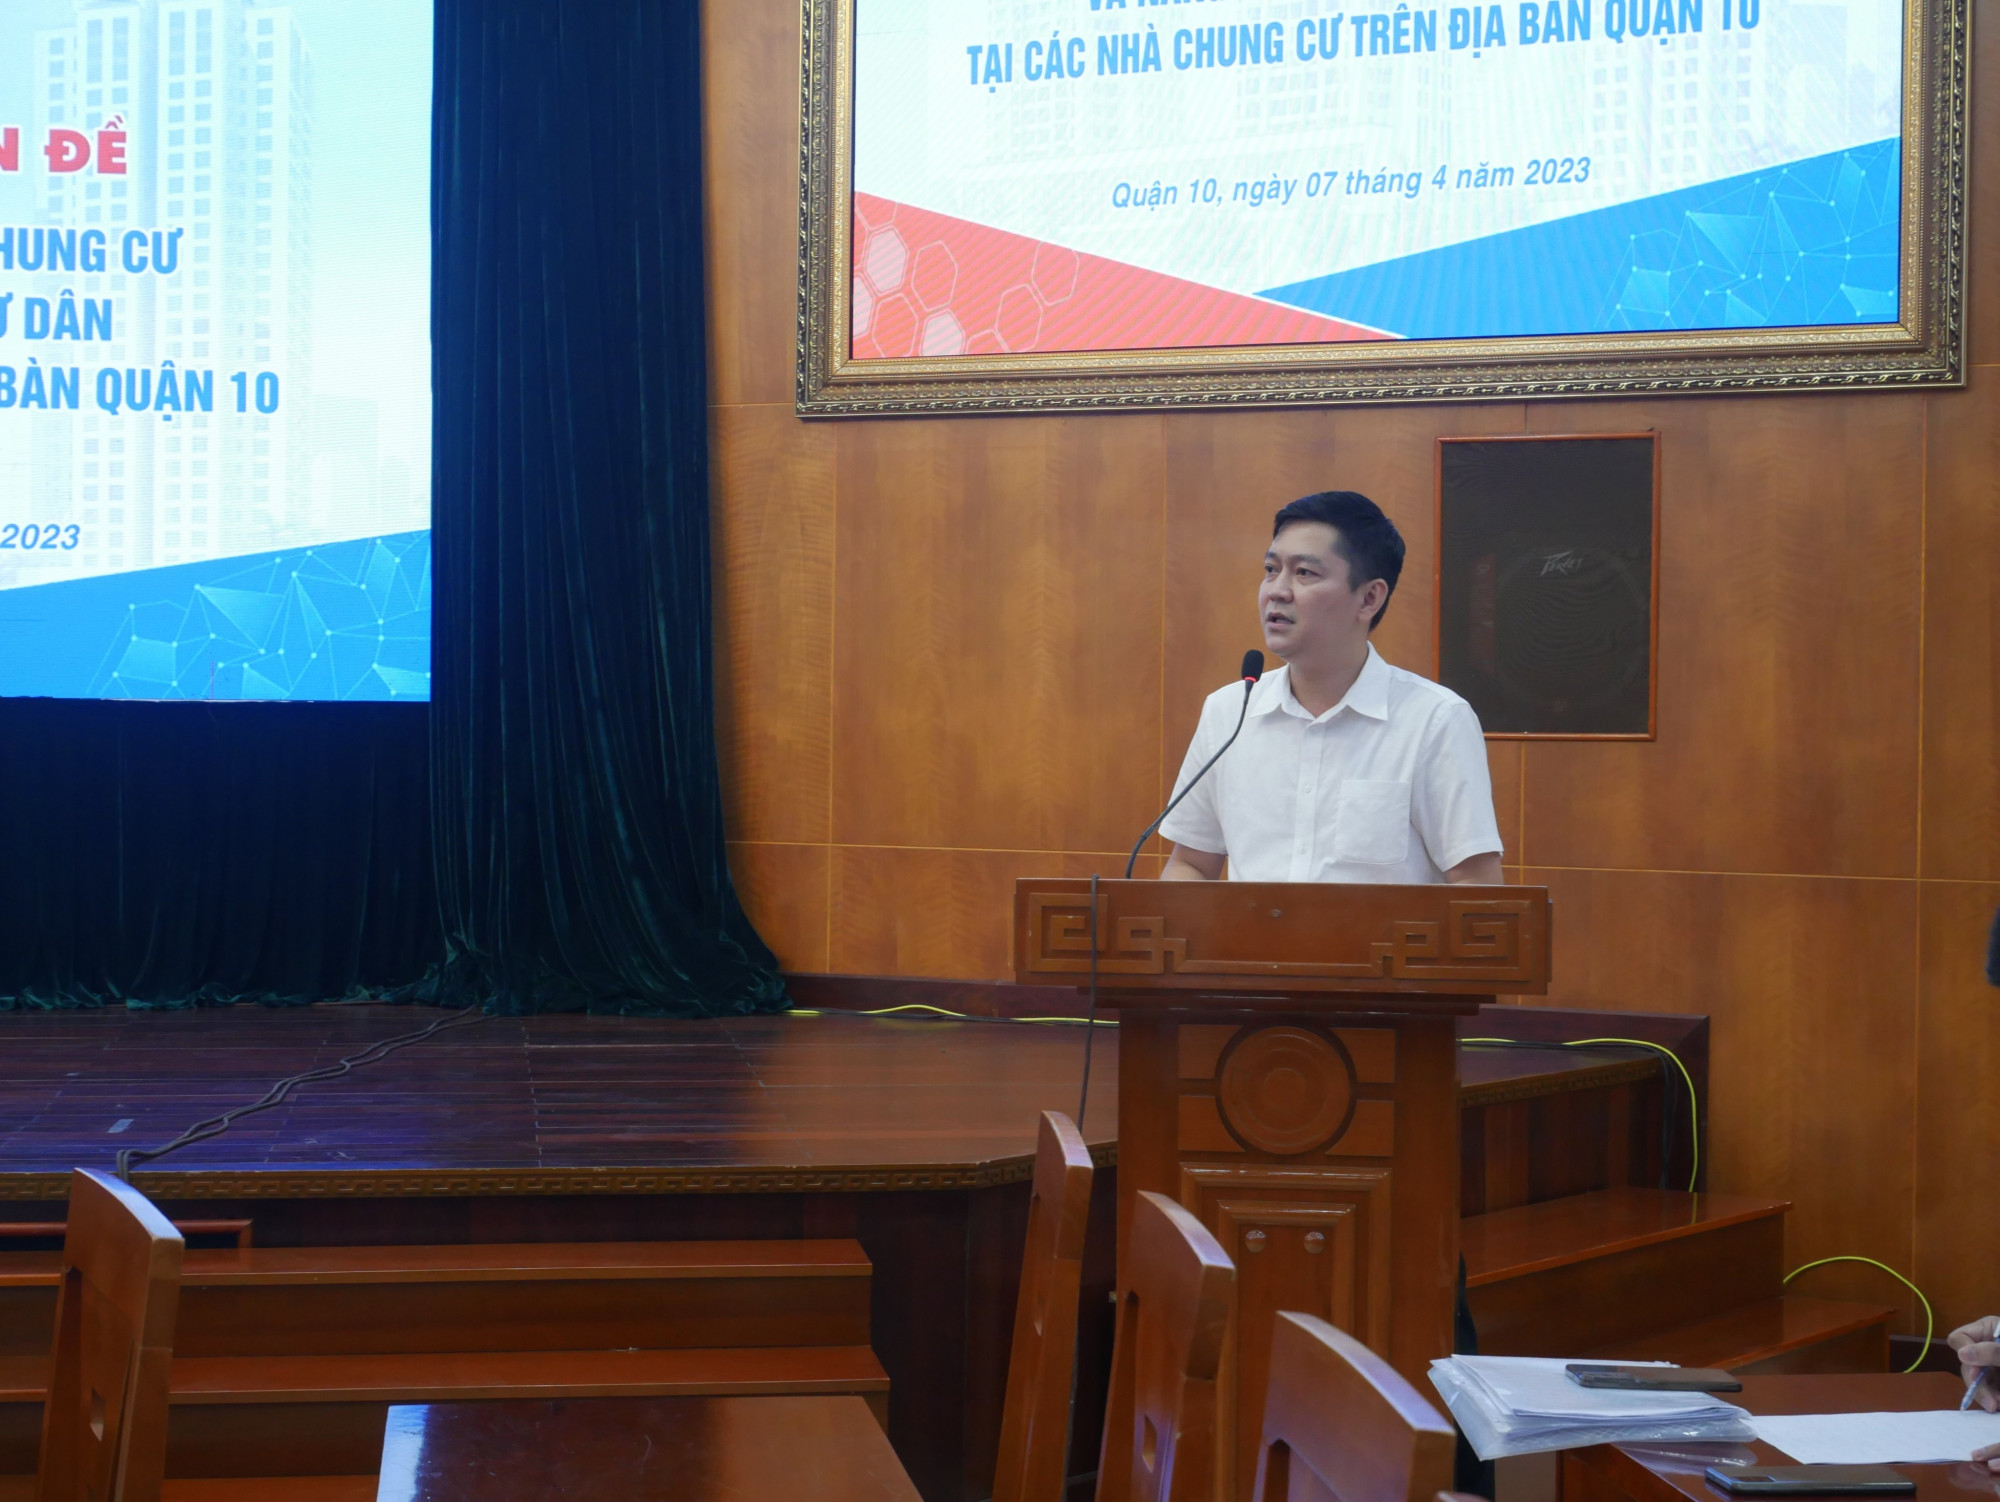 Ông Hà Tuấn Phương - Chủ tịch UBND phường 14, quận 10 phân tích việc chính quyền khó quản lý trong